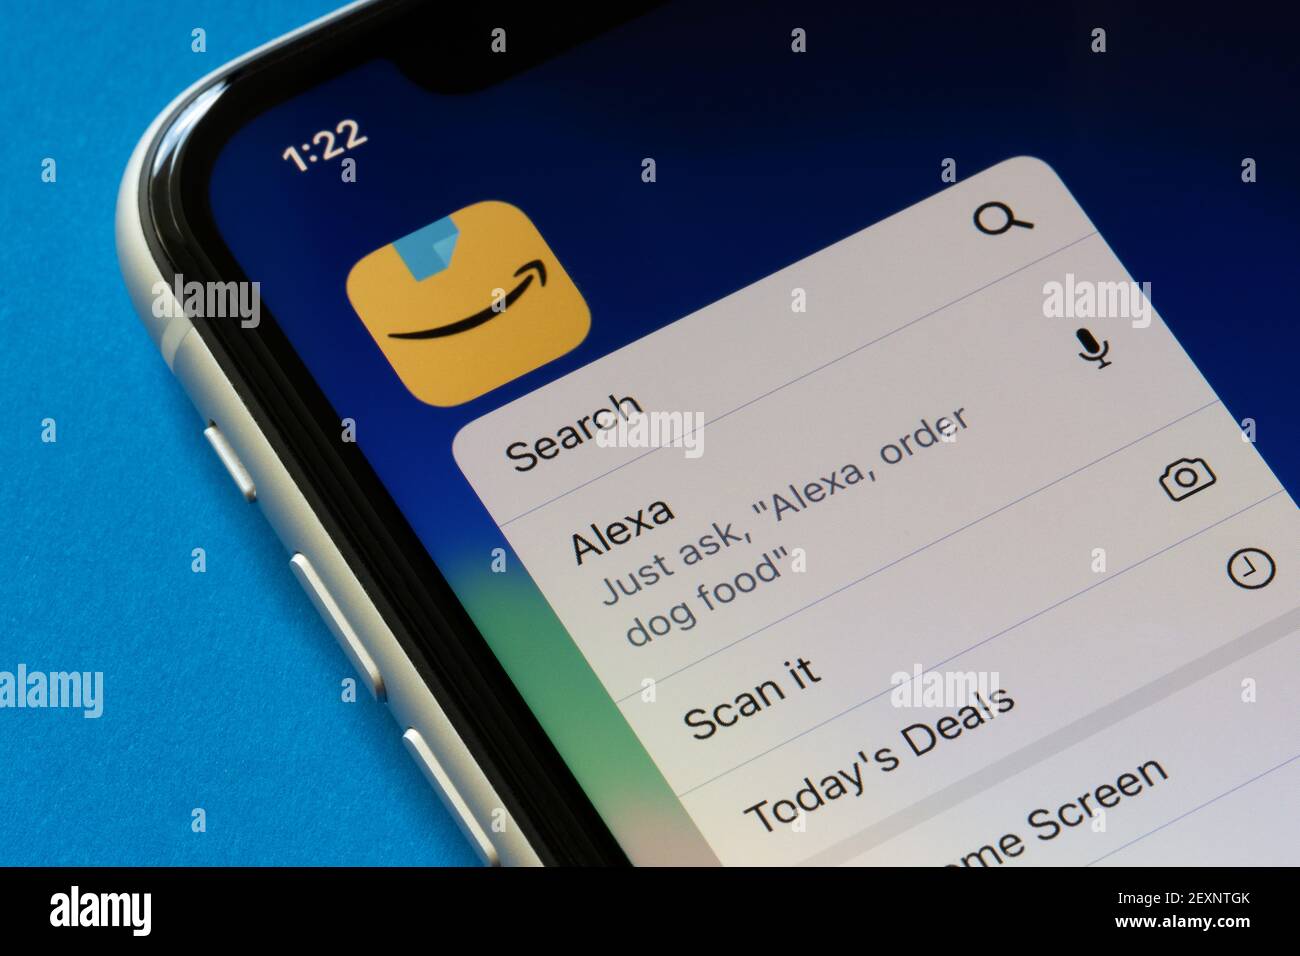 L'icona dell'app Amazon e il relativo menu di azioni rapide sono visibili su un iPhone, con funzioni tra cui il servizio di controllo vocale Alexa, il 4 marzo 2021. Foto Stock